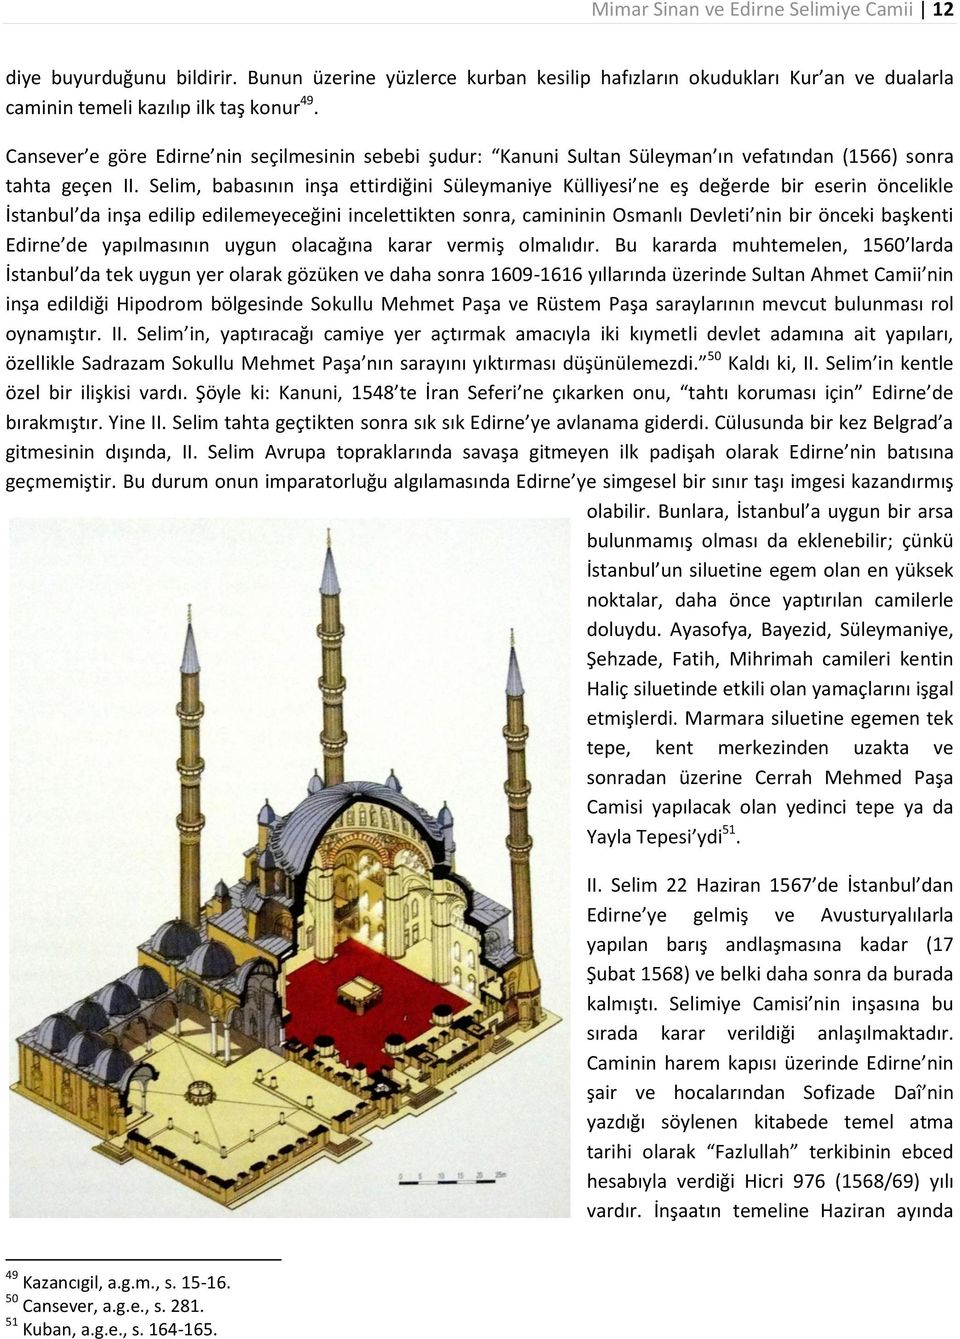 Selim, babasının inşa ettirdiğini Süleymaniye Külliyesi ne eş değerde bir eserin öncelikle İstanbul da inşa edilip edilemeyeceğini incelettikten sonra, camininin Osmanlı Devleti nin bir önceki